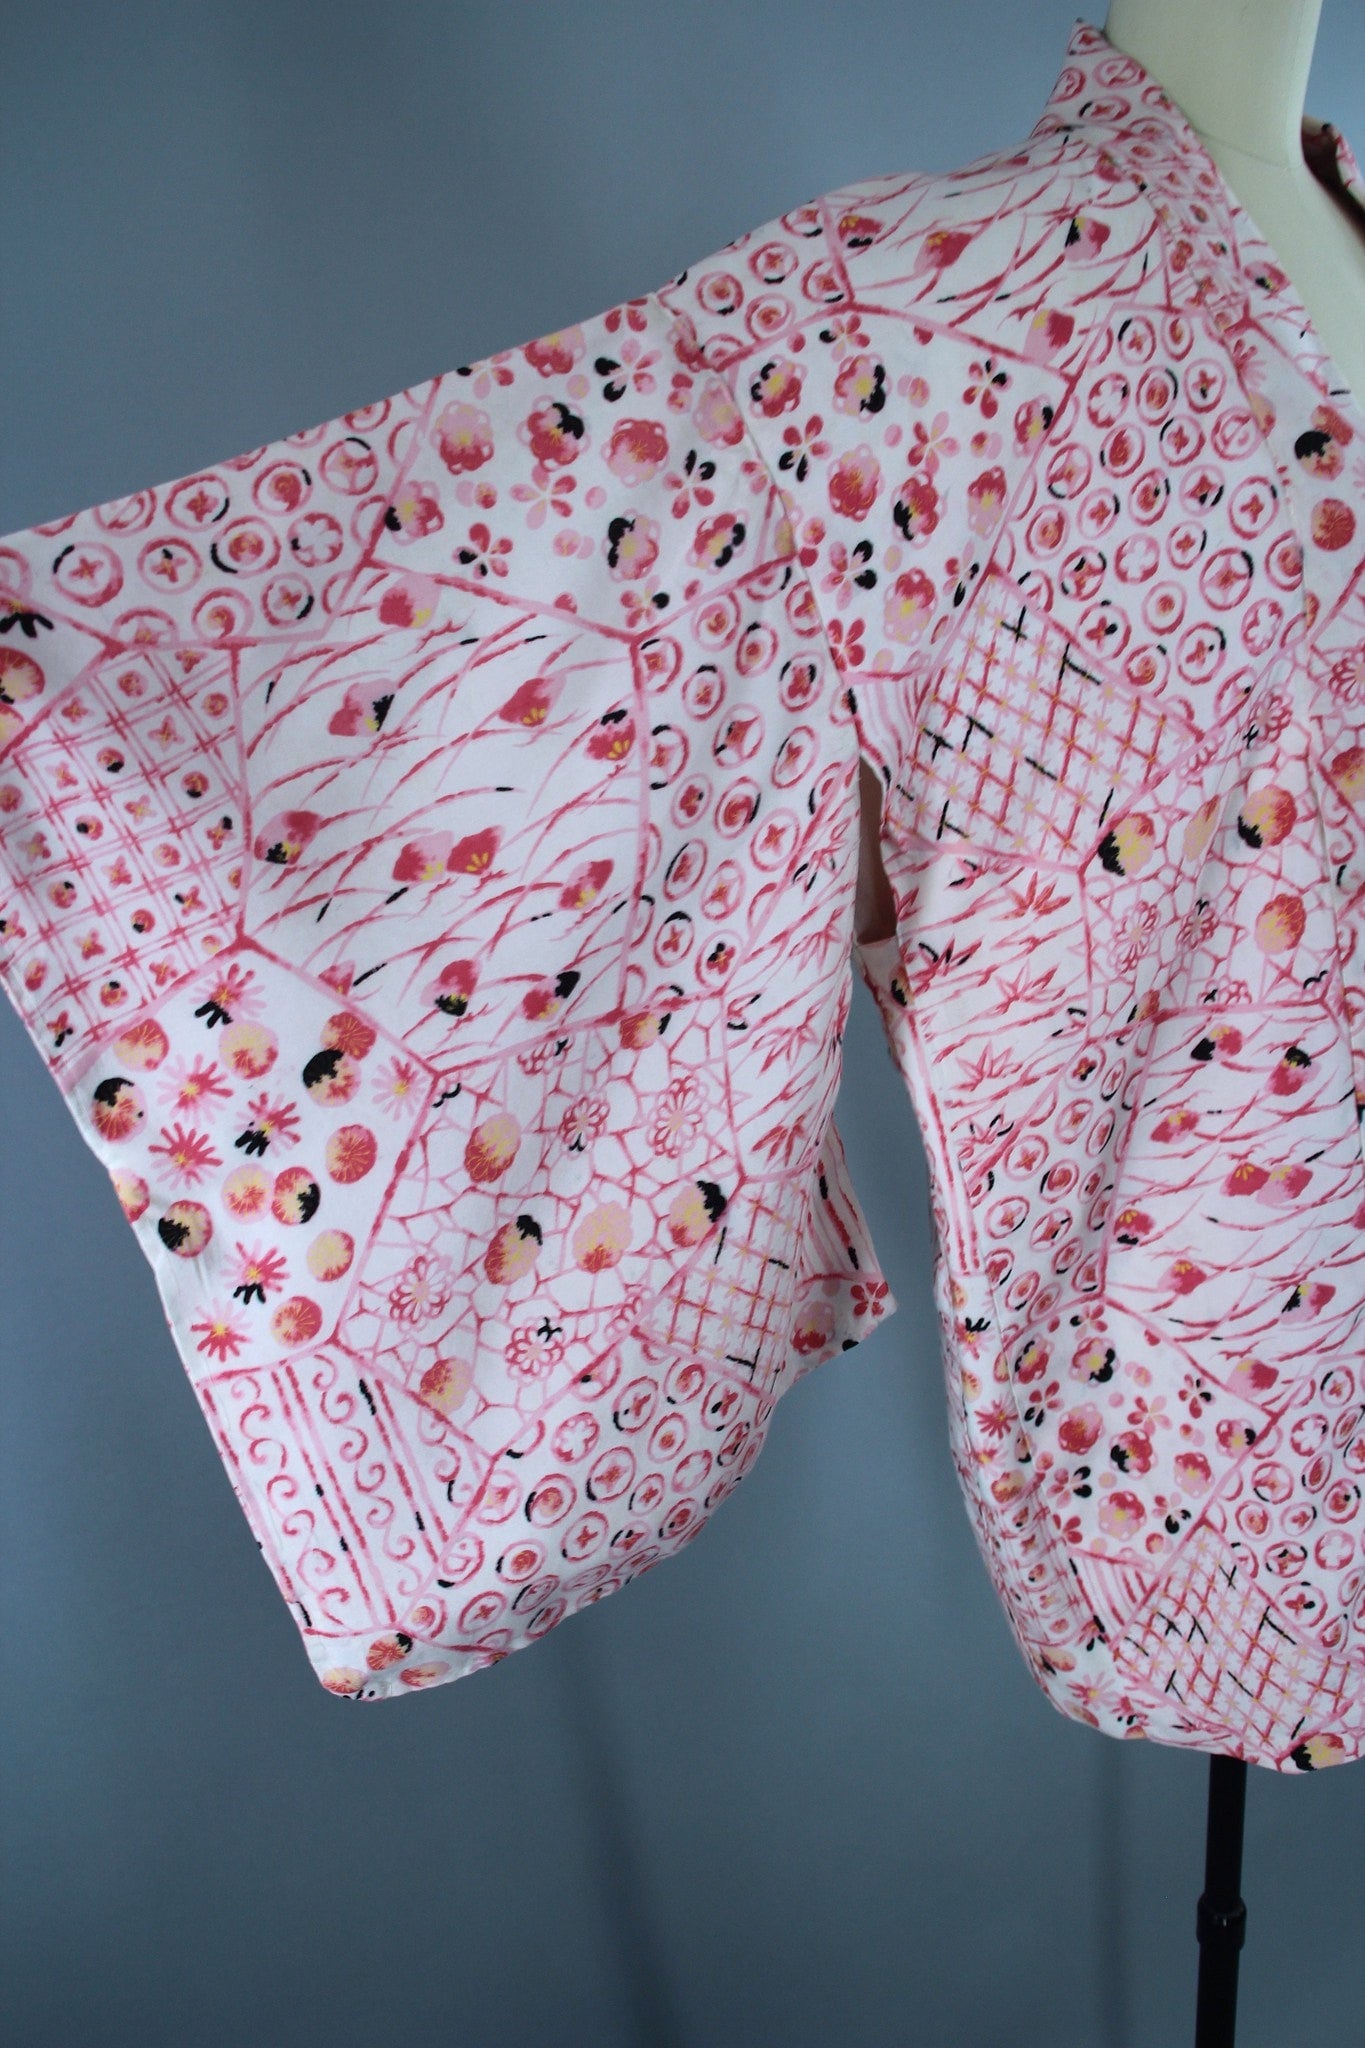 1950s Vintage Haori Kimono Jacket in White and Pink Floral Print - ThisBlueBird